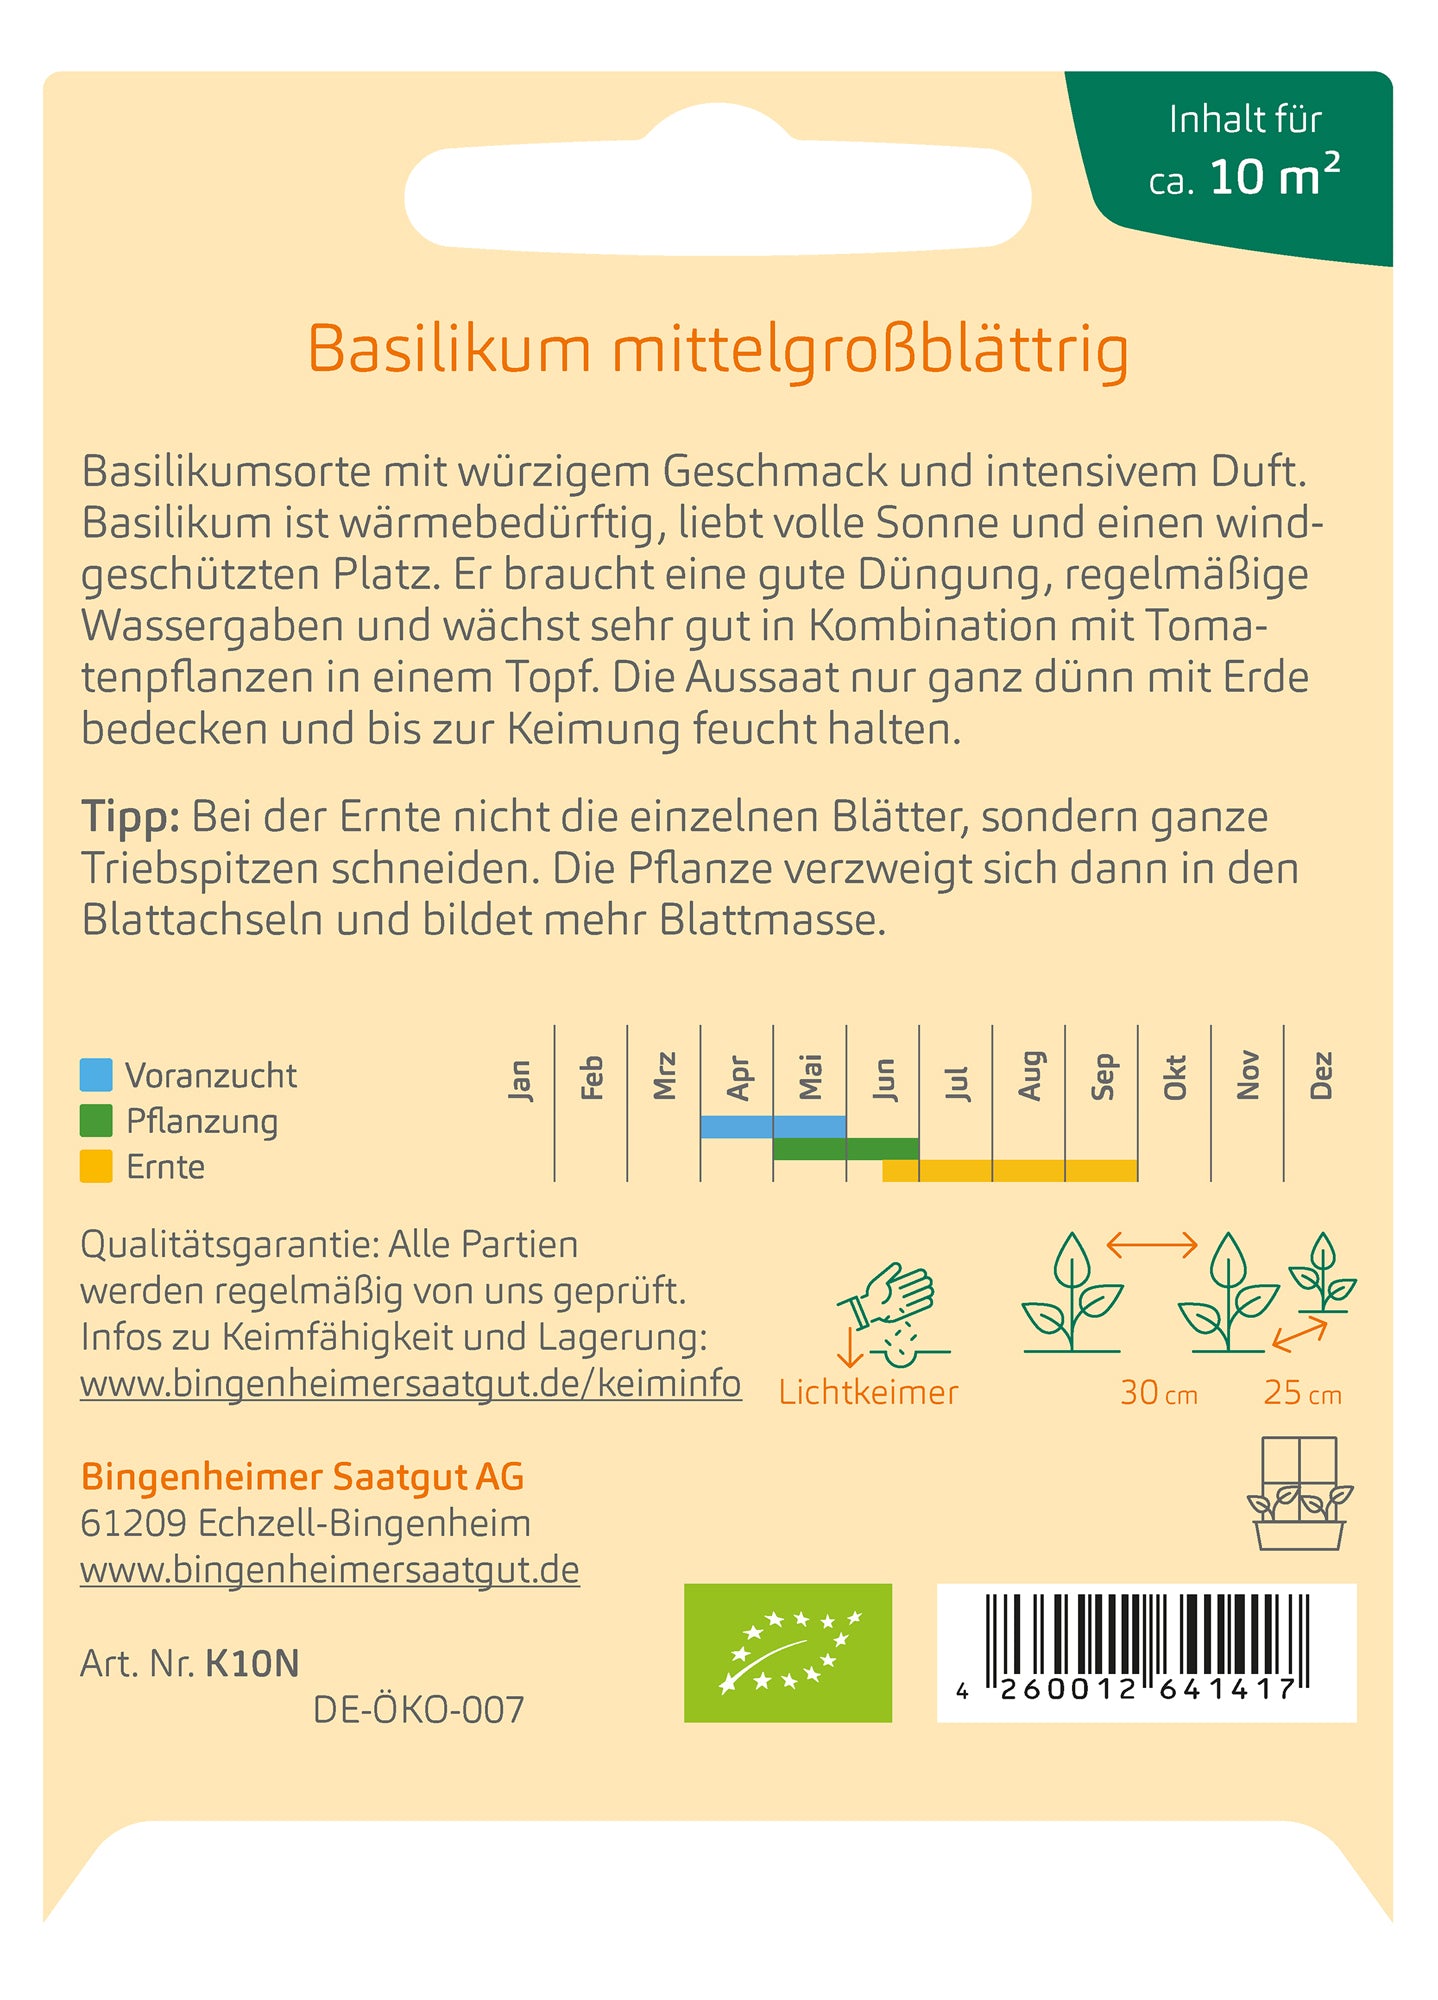 Basilikum mittelgroßblättrig | BIO Basilikumsamen von Bingenheimer Saatgut